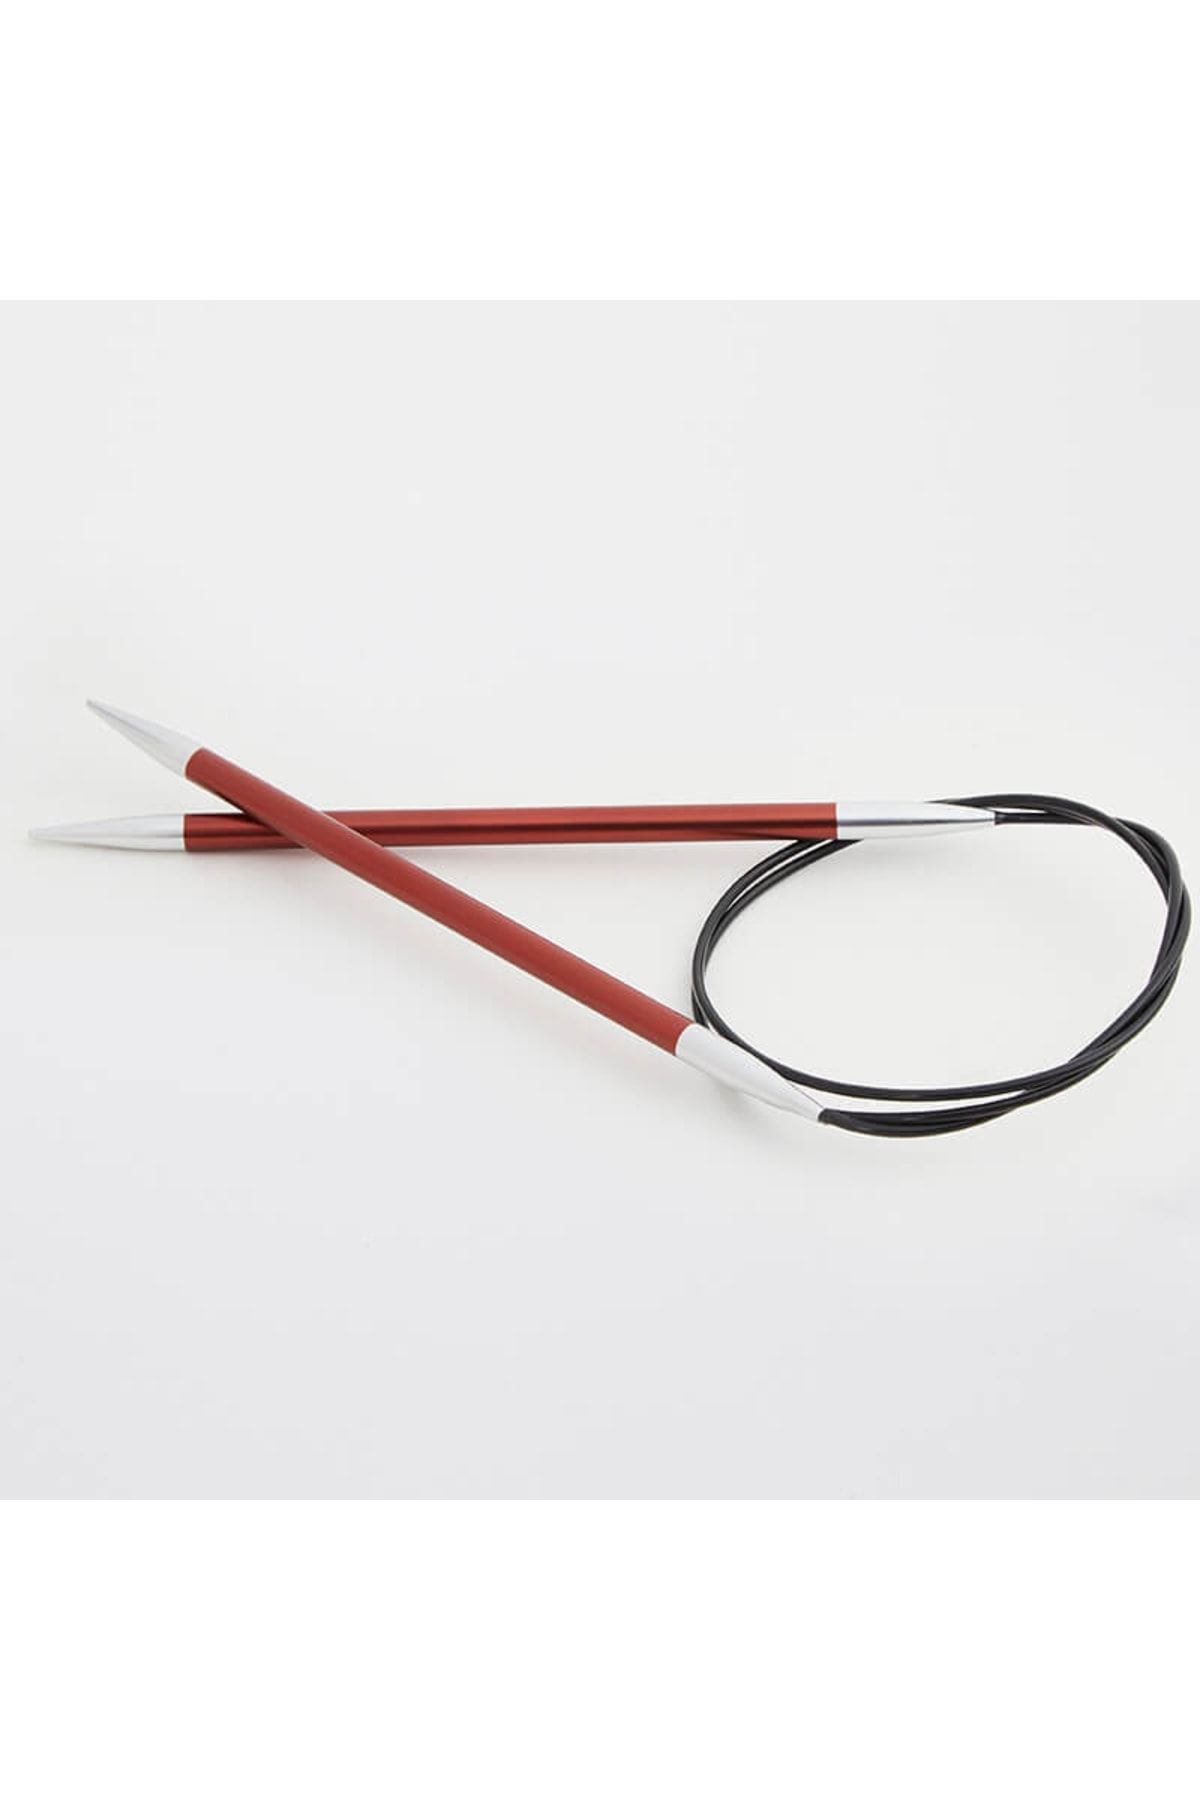 Knitpro Zing Sabit Misinalı Şiş 40cm / 5,50mm